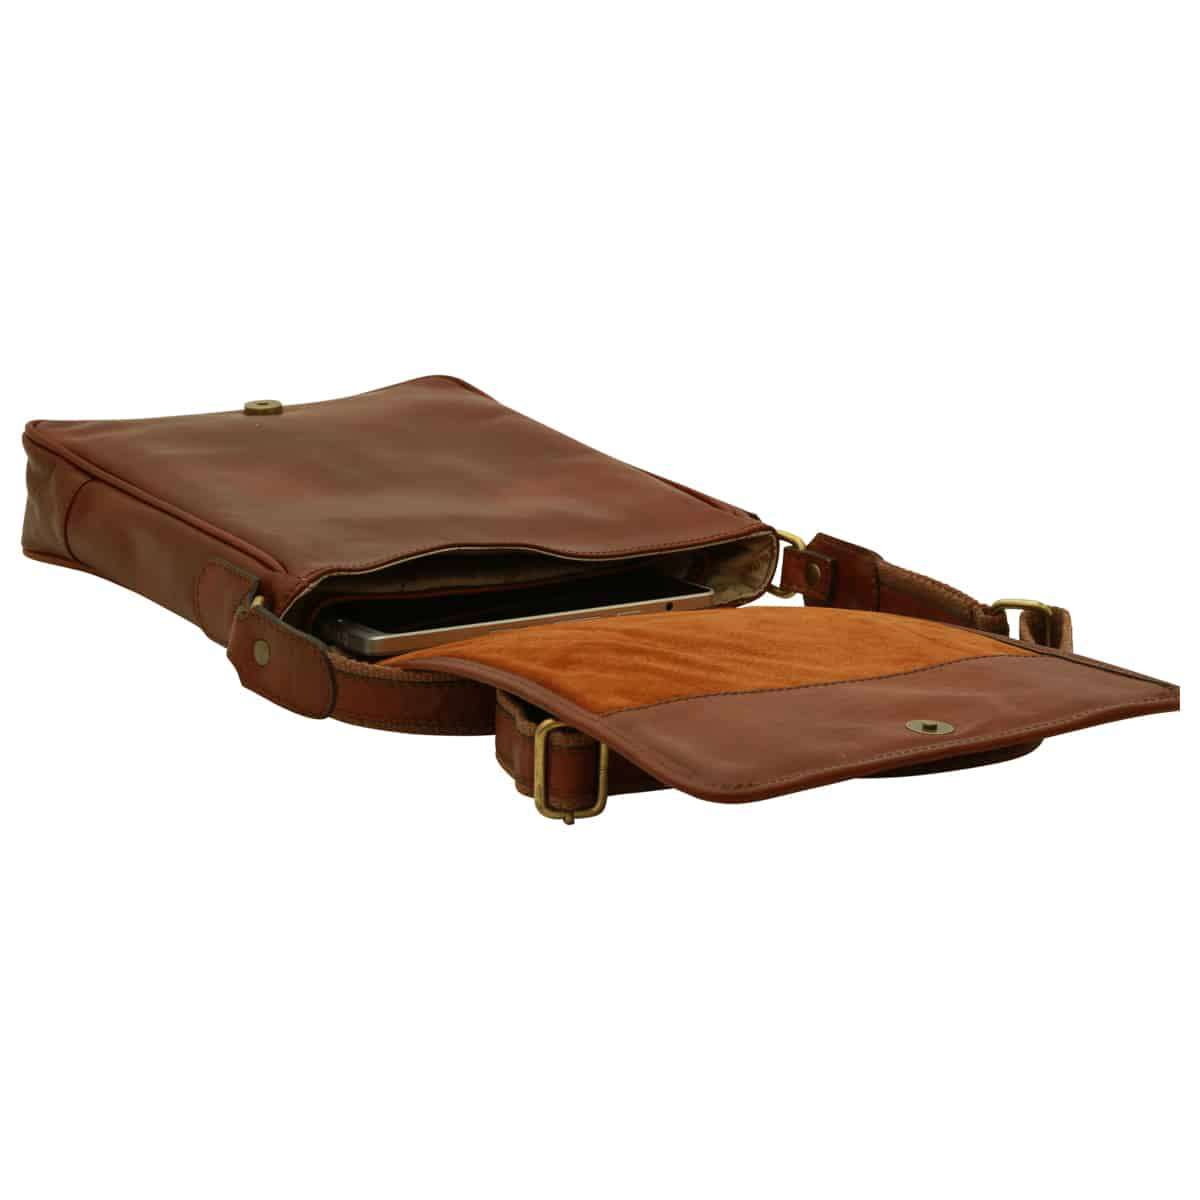 Soft Calfskin Leather Satchel Bag - Brown | 031091MA US | Old Angler Firenze